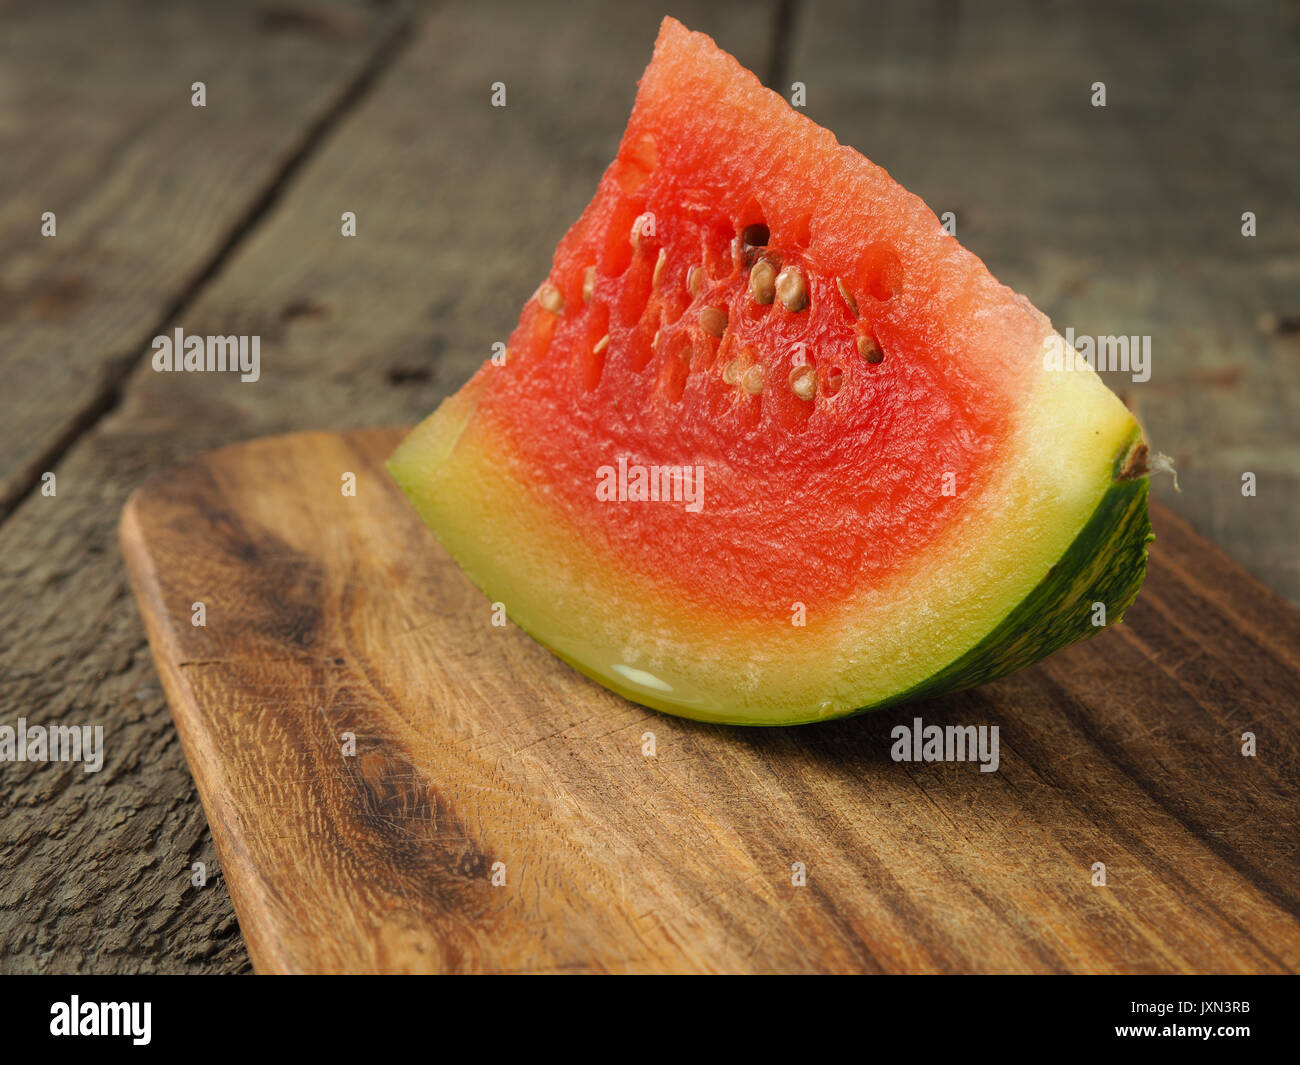 Un morceau de melon d'eau sur une planche à découper en bois Banque D'Images